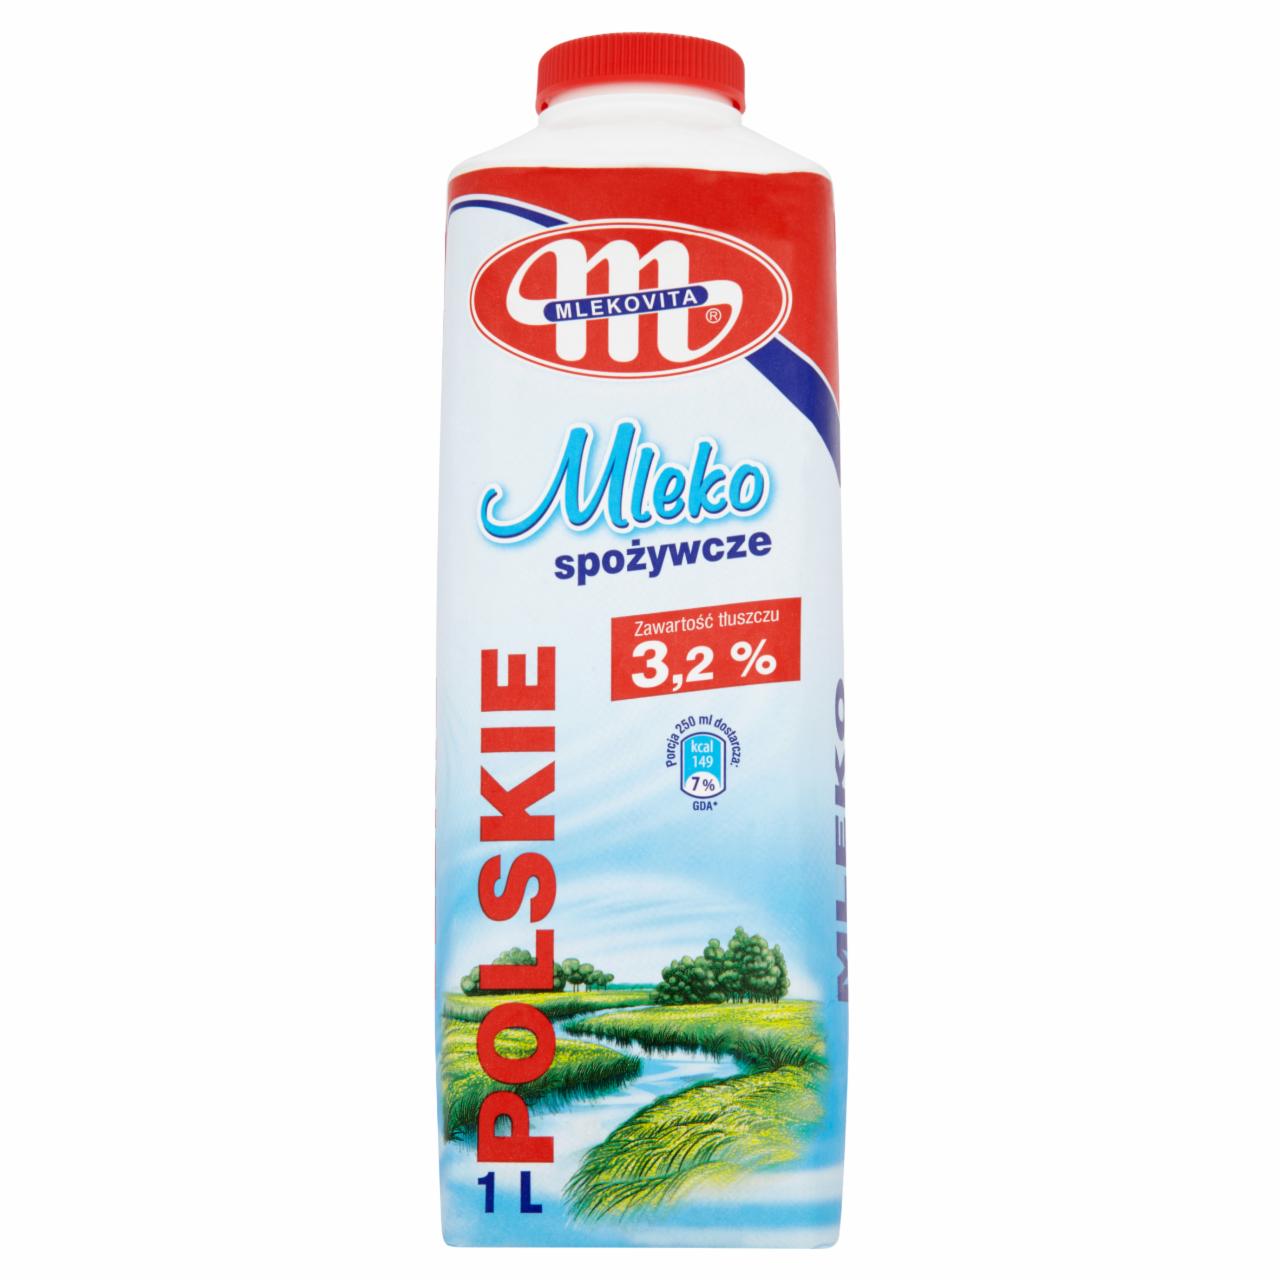 Zdjęcia - Mlekovita Polskie Mleko spożywcze 3,2% 1 l